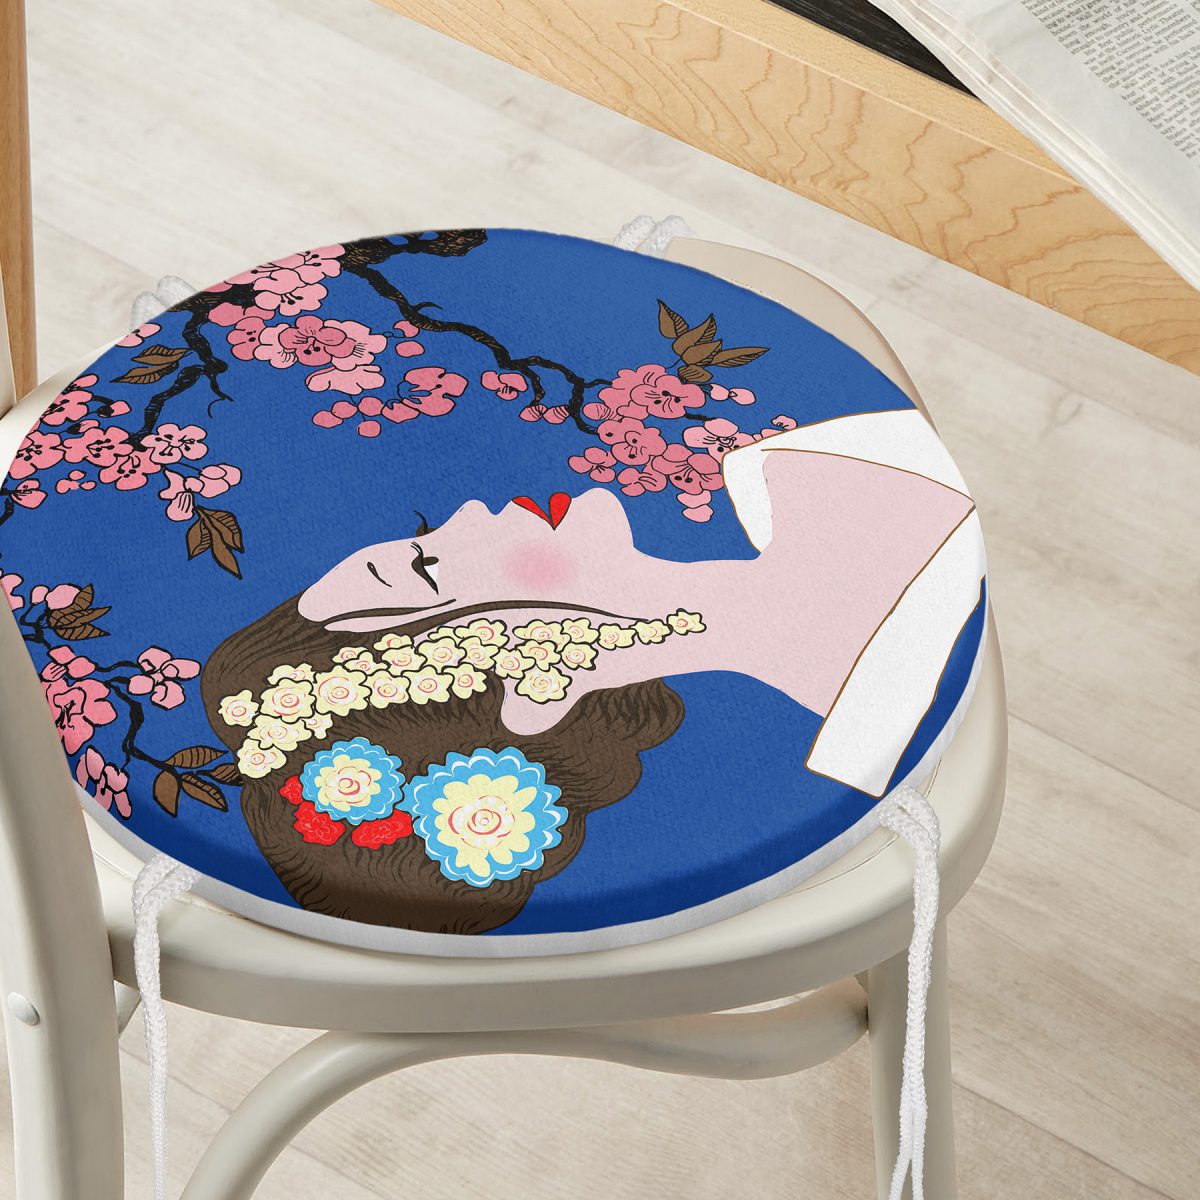 Çiçek Motifli Japon Kız Desenli Yuvarlak Fermuarlı Sandalye Minderi Realhomes